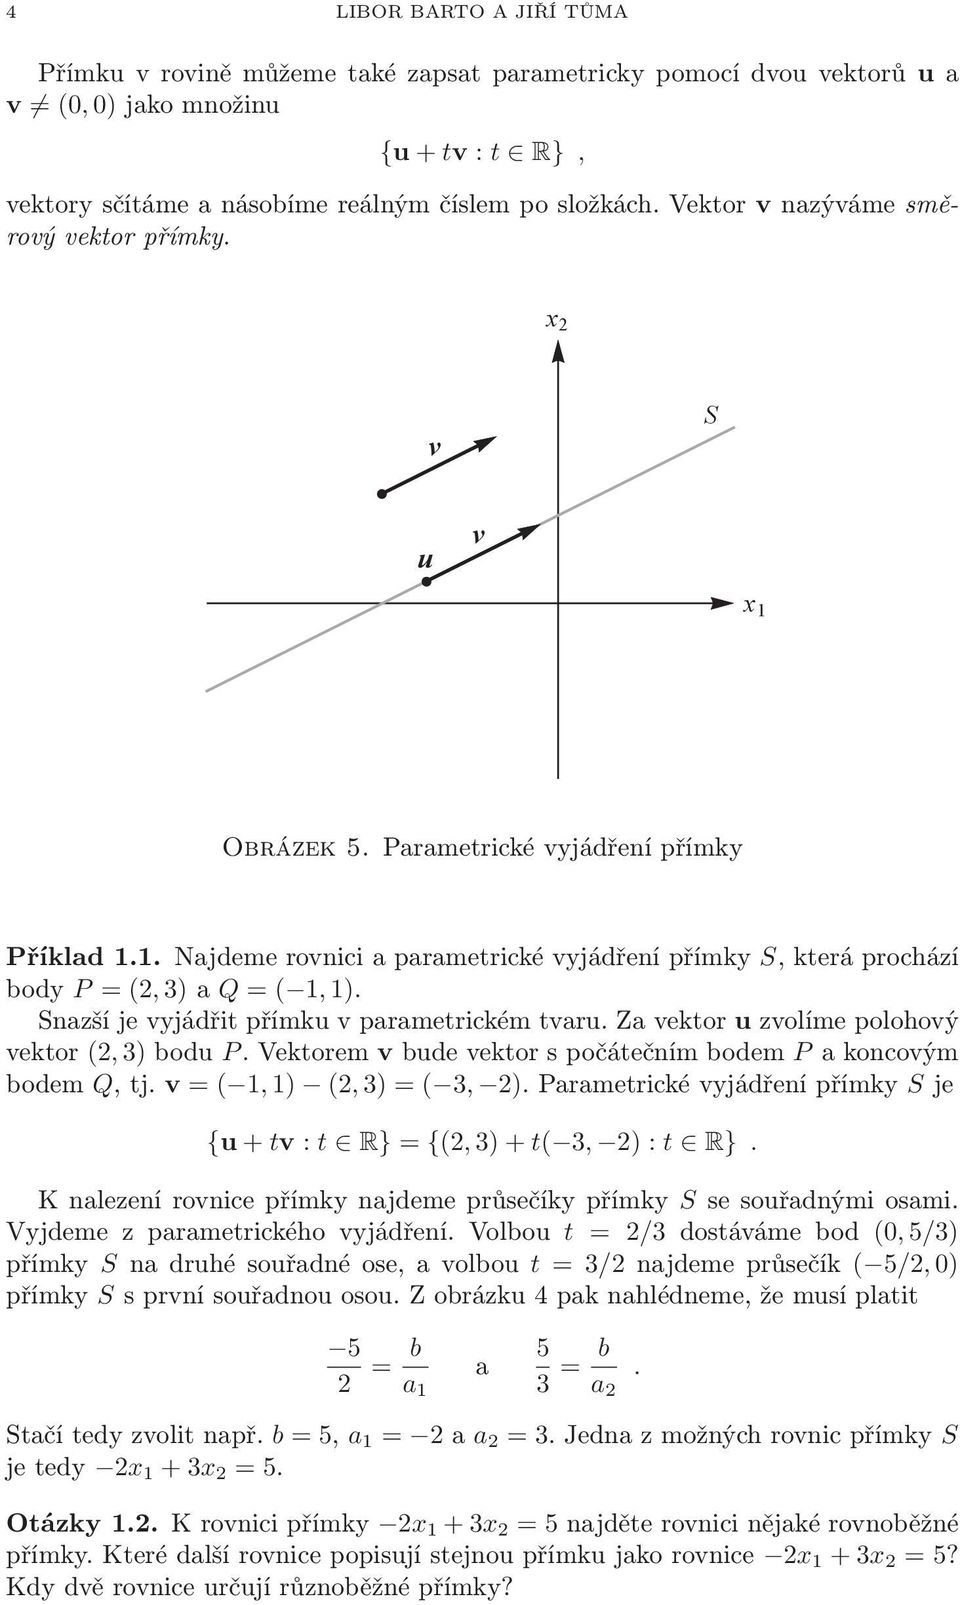 vyjádřit přímku v parametrickém tvaru Za vektor u zvolíme polohový vektor (2,3)bodu PVektorem vbudevektorspočátečnímbodem Pakoncovým bodem Q,tj v = ( 1,1) (2,3) = ( 3, 2)Parametrickévyjádřenípřímky